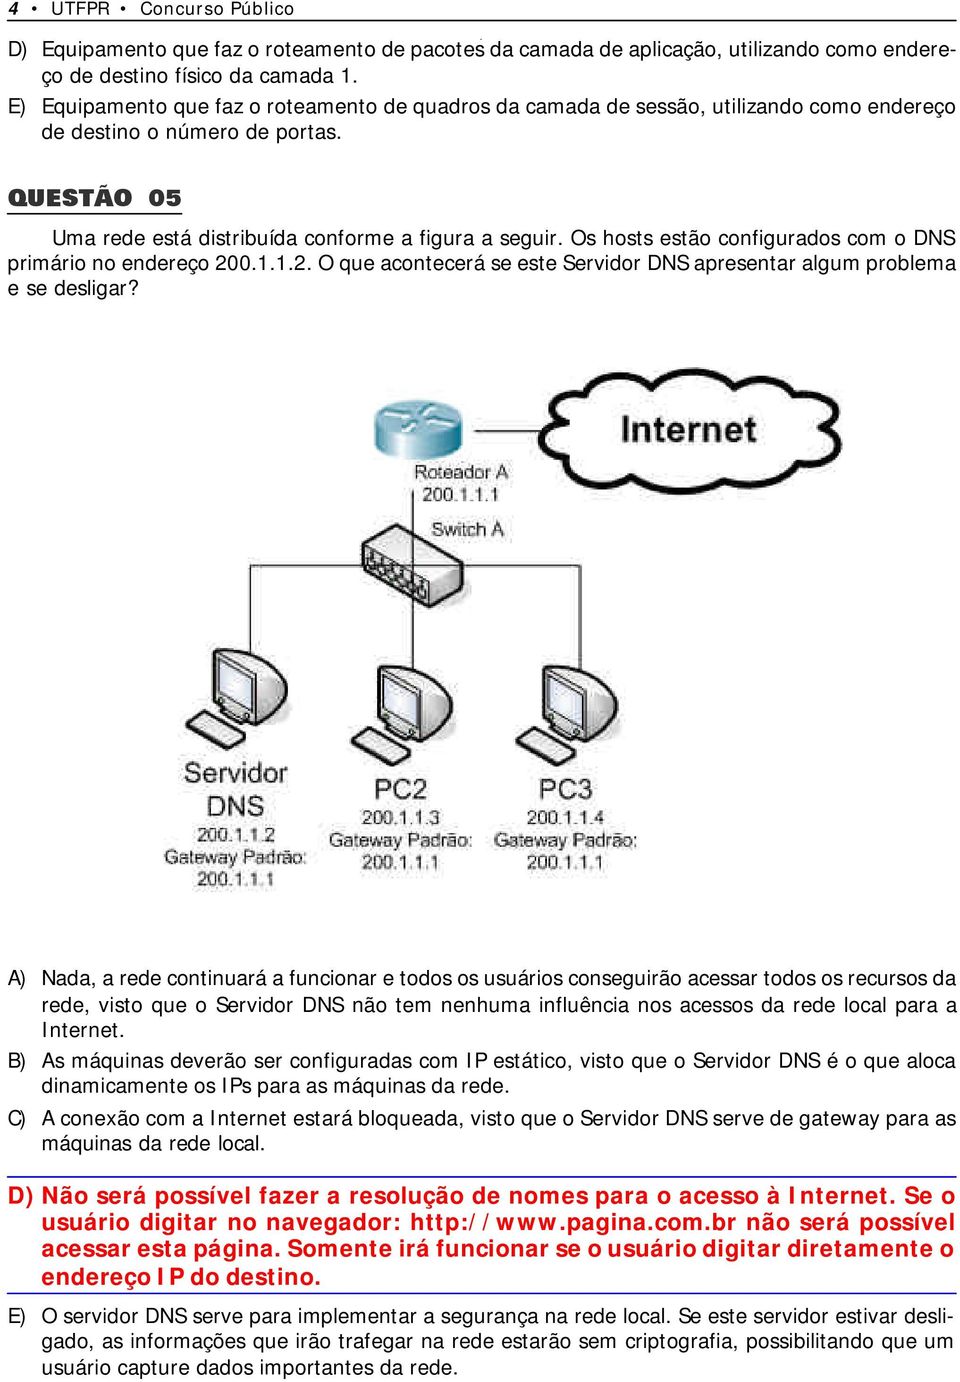 Os hosts estão configurados com o DNS primário no endereço 200.1.1.2. O que acontecerá se este Servidor DNS apresentar algum problema e se desligar?